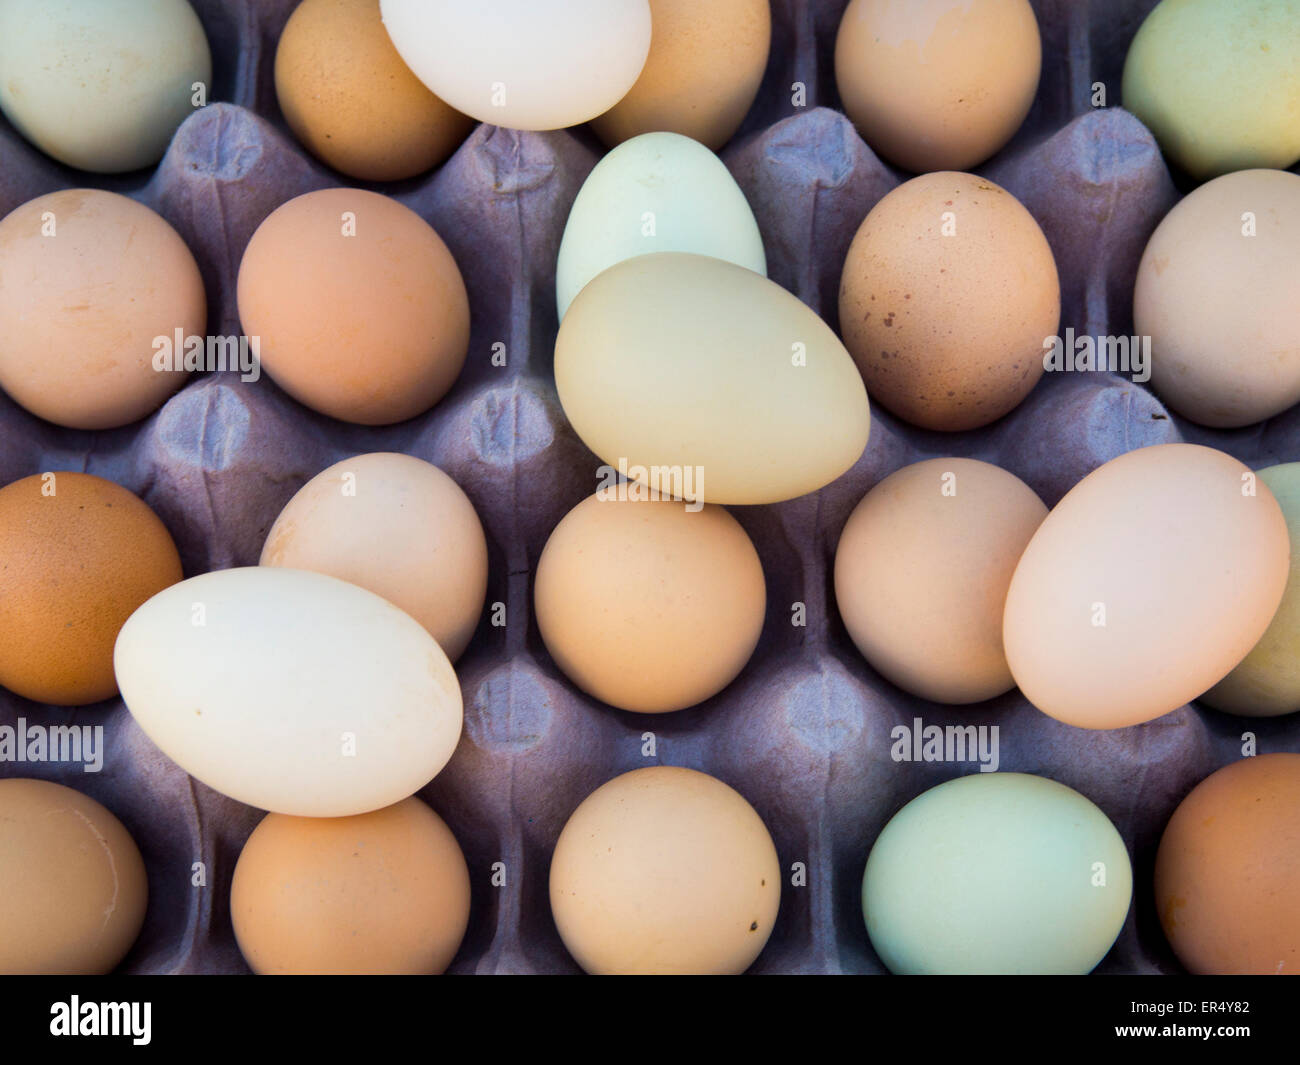 Huevos frescos de gallina. Stock Photo